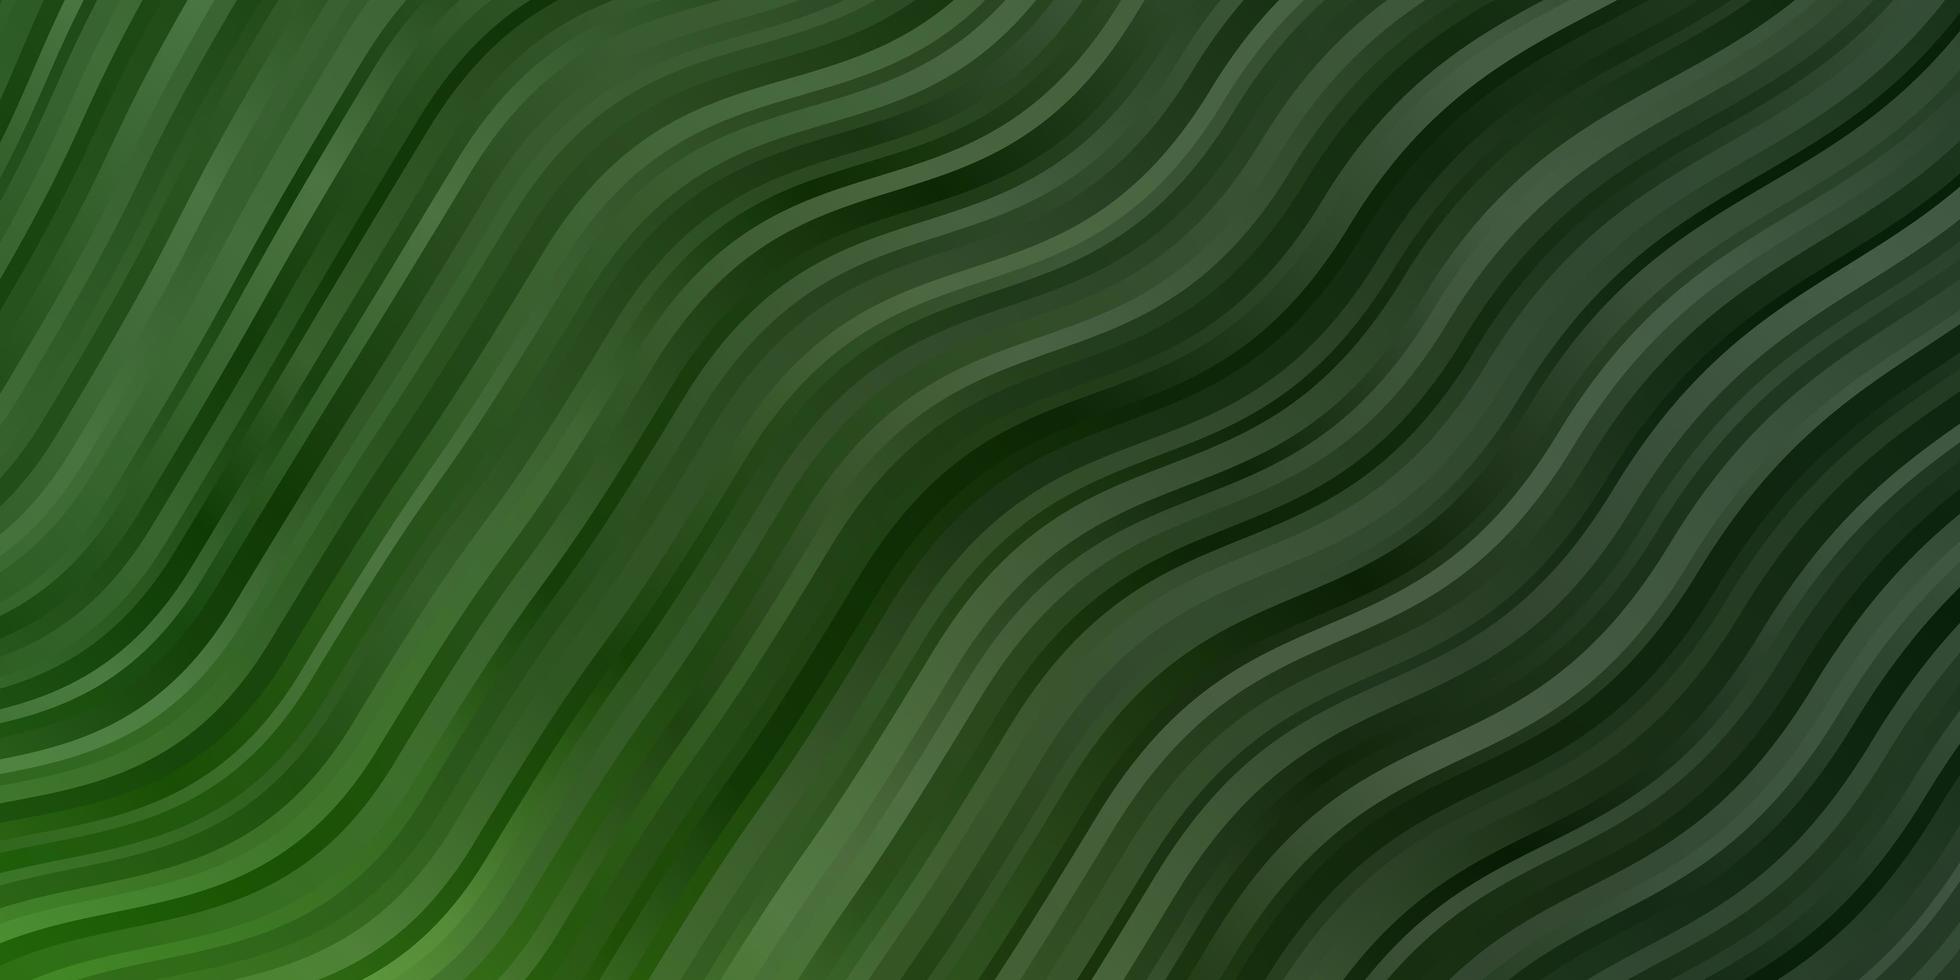 modello vettoriale verde chiaro con curve. illustrazione astratta con fiocchi sfumati. miglior design per i tuoi poster, banner.